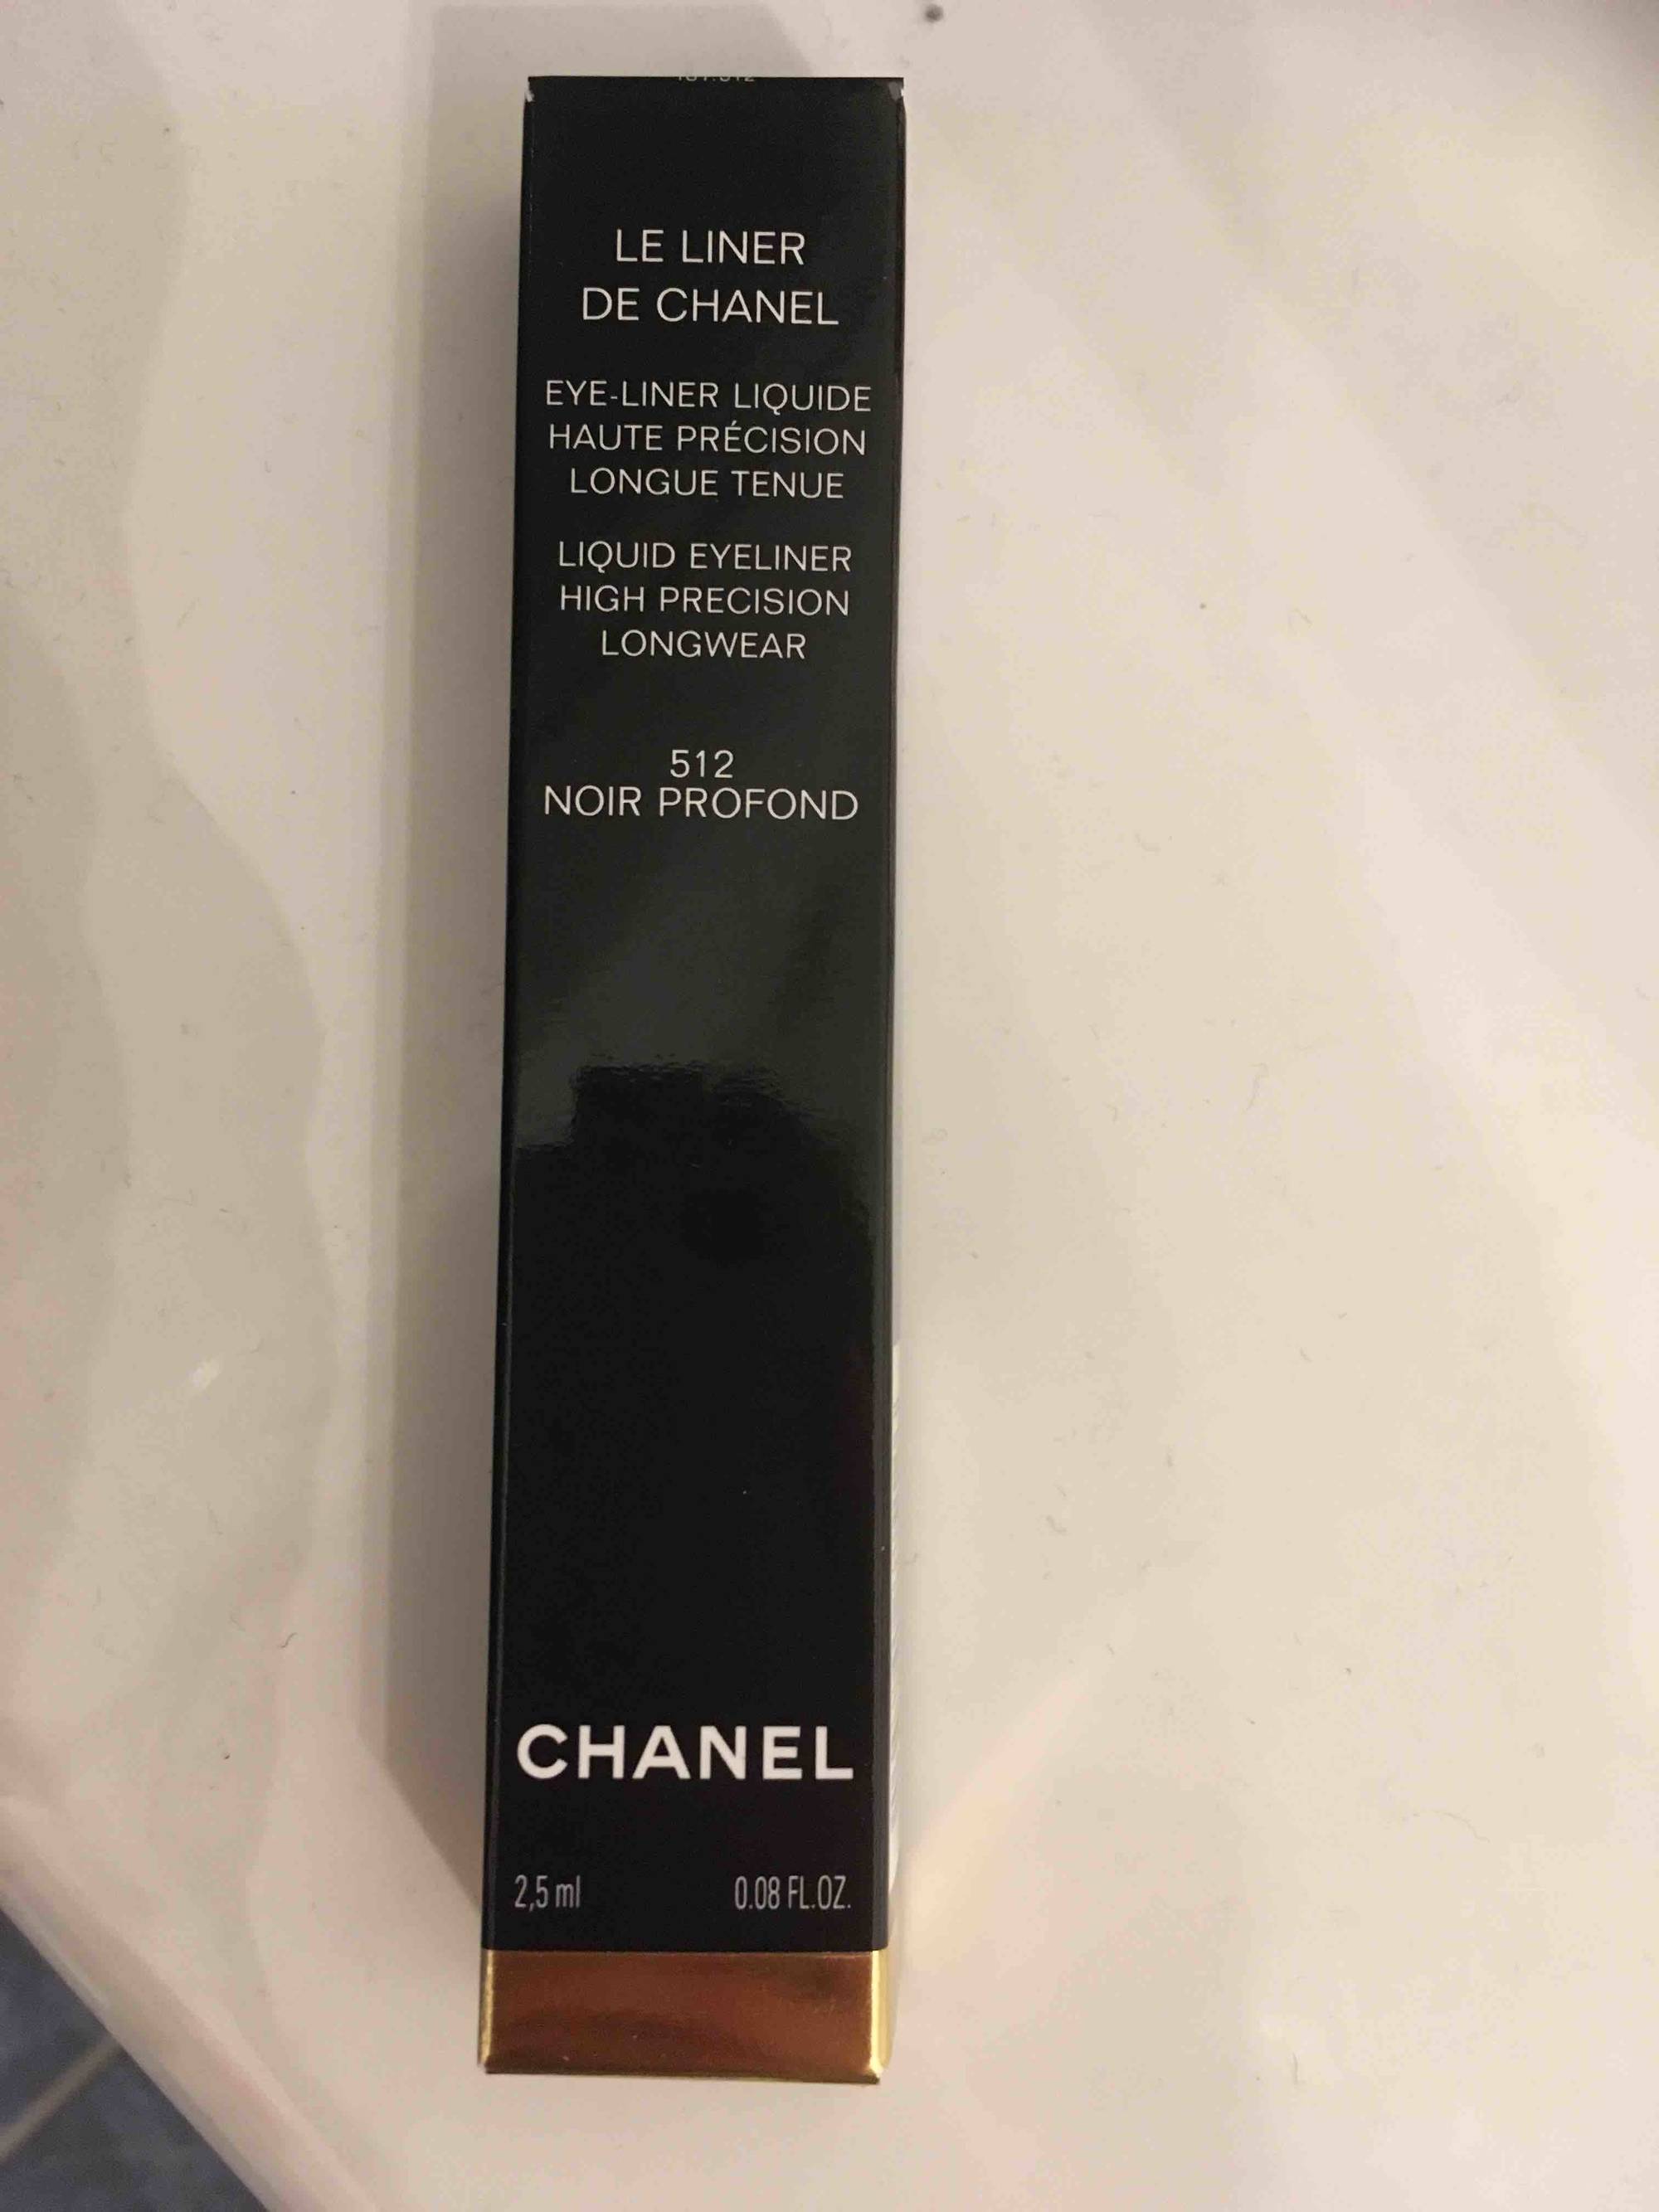 Composition CHANEL Le liner de Chanel - Eye liner liquide 512 noir profond  - UFC-Que Choisir